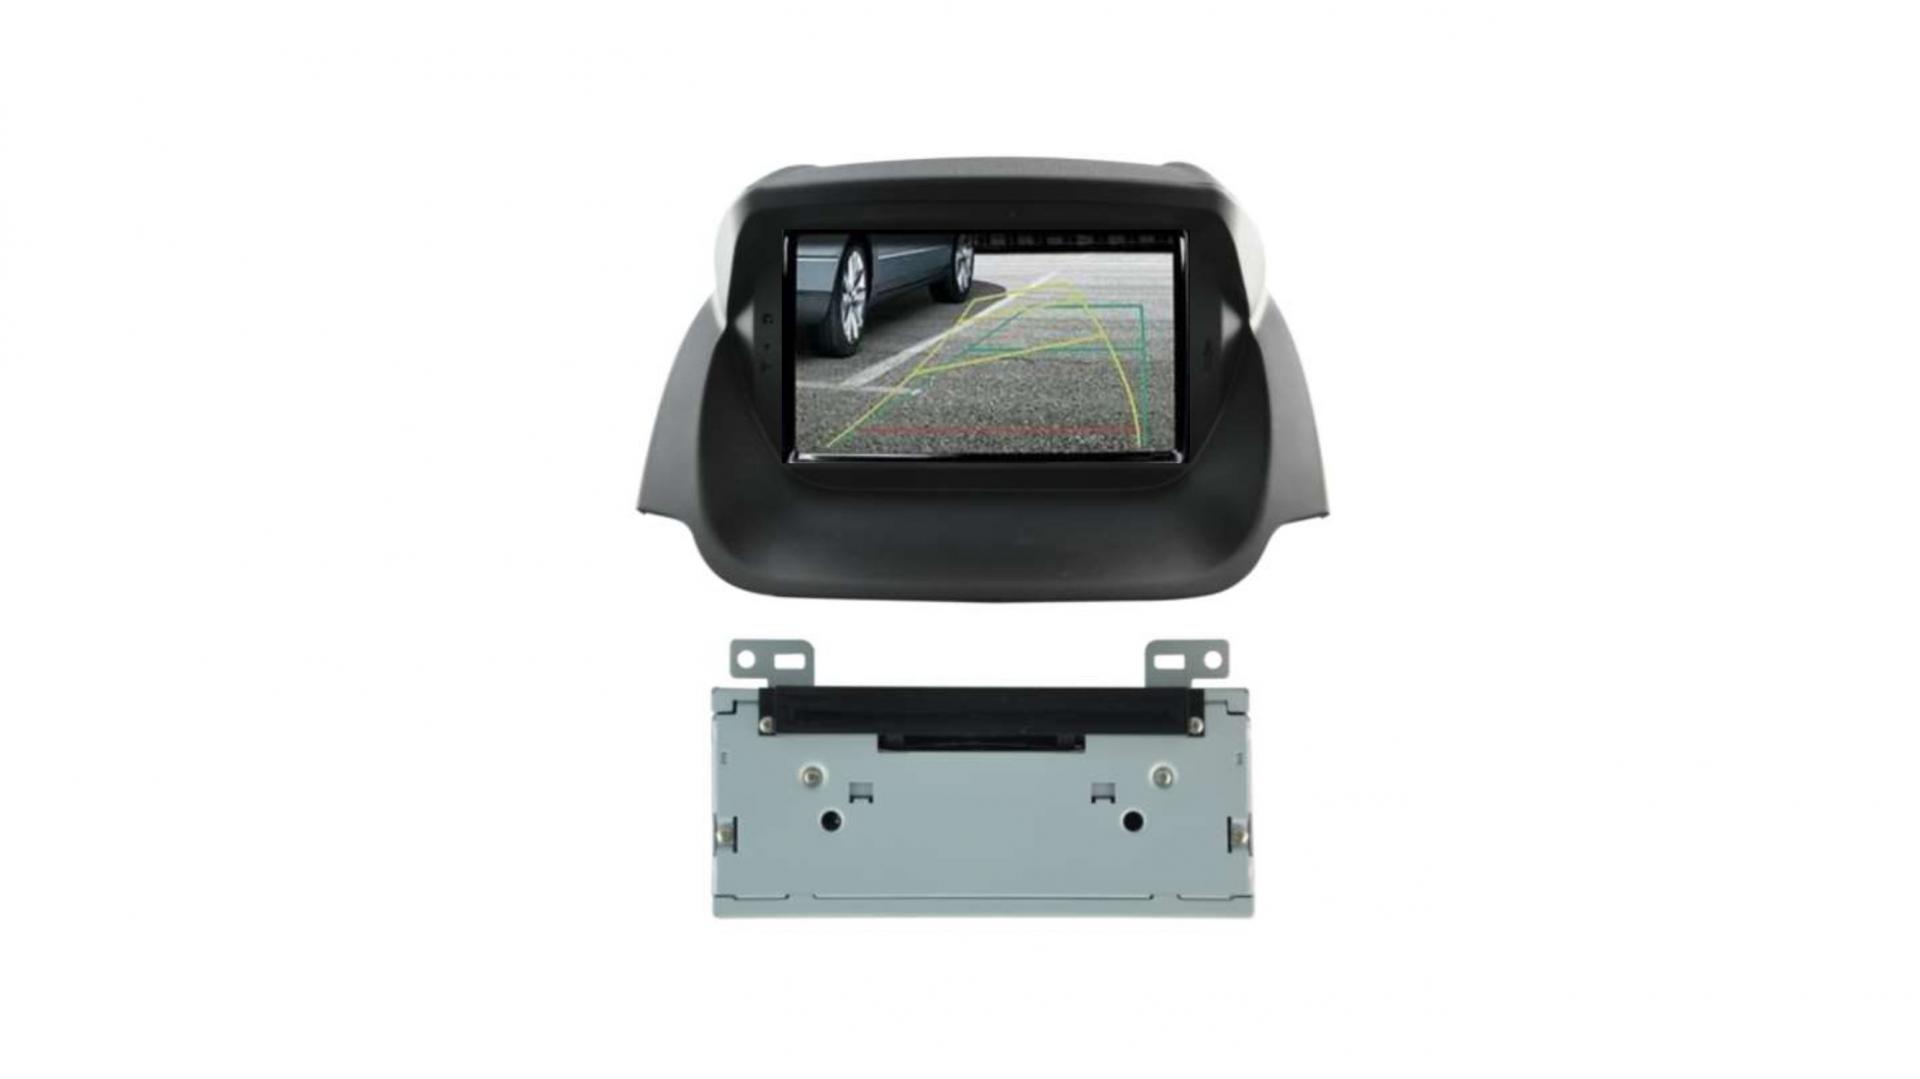 Autoradio androi d auto carplay gps bluetooth ford ecosport a partir de 2013 2